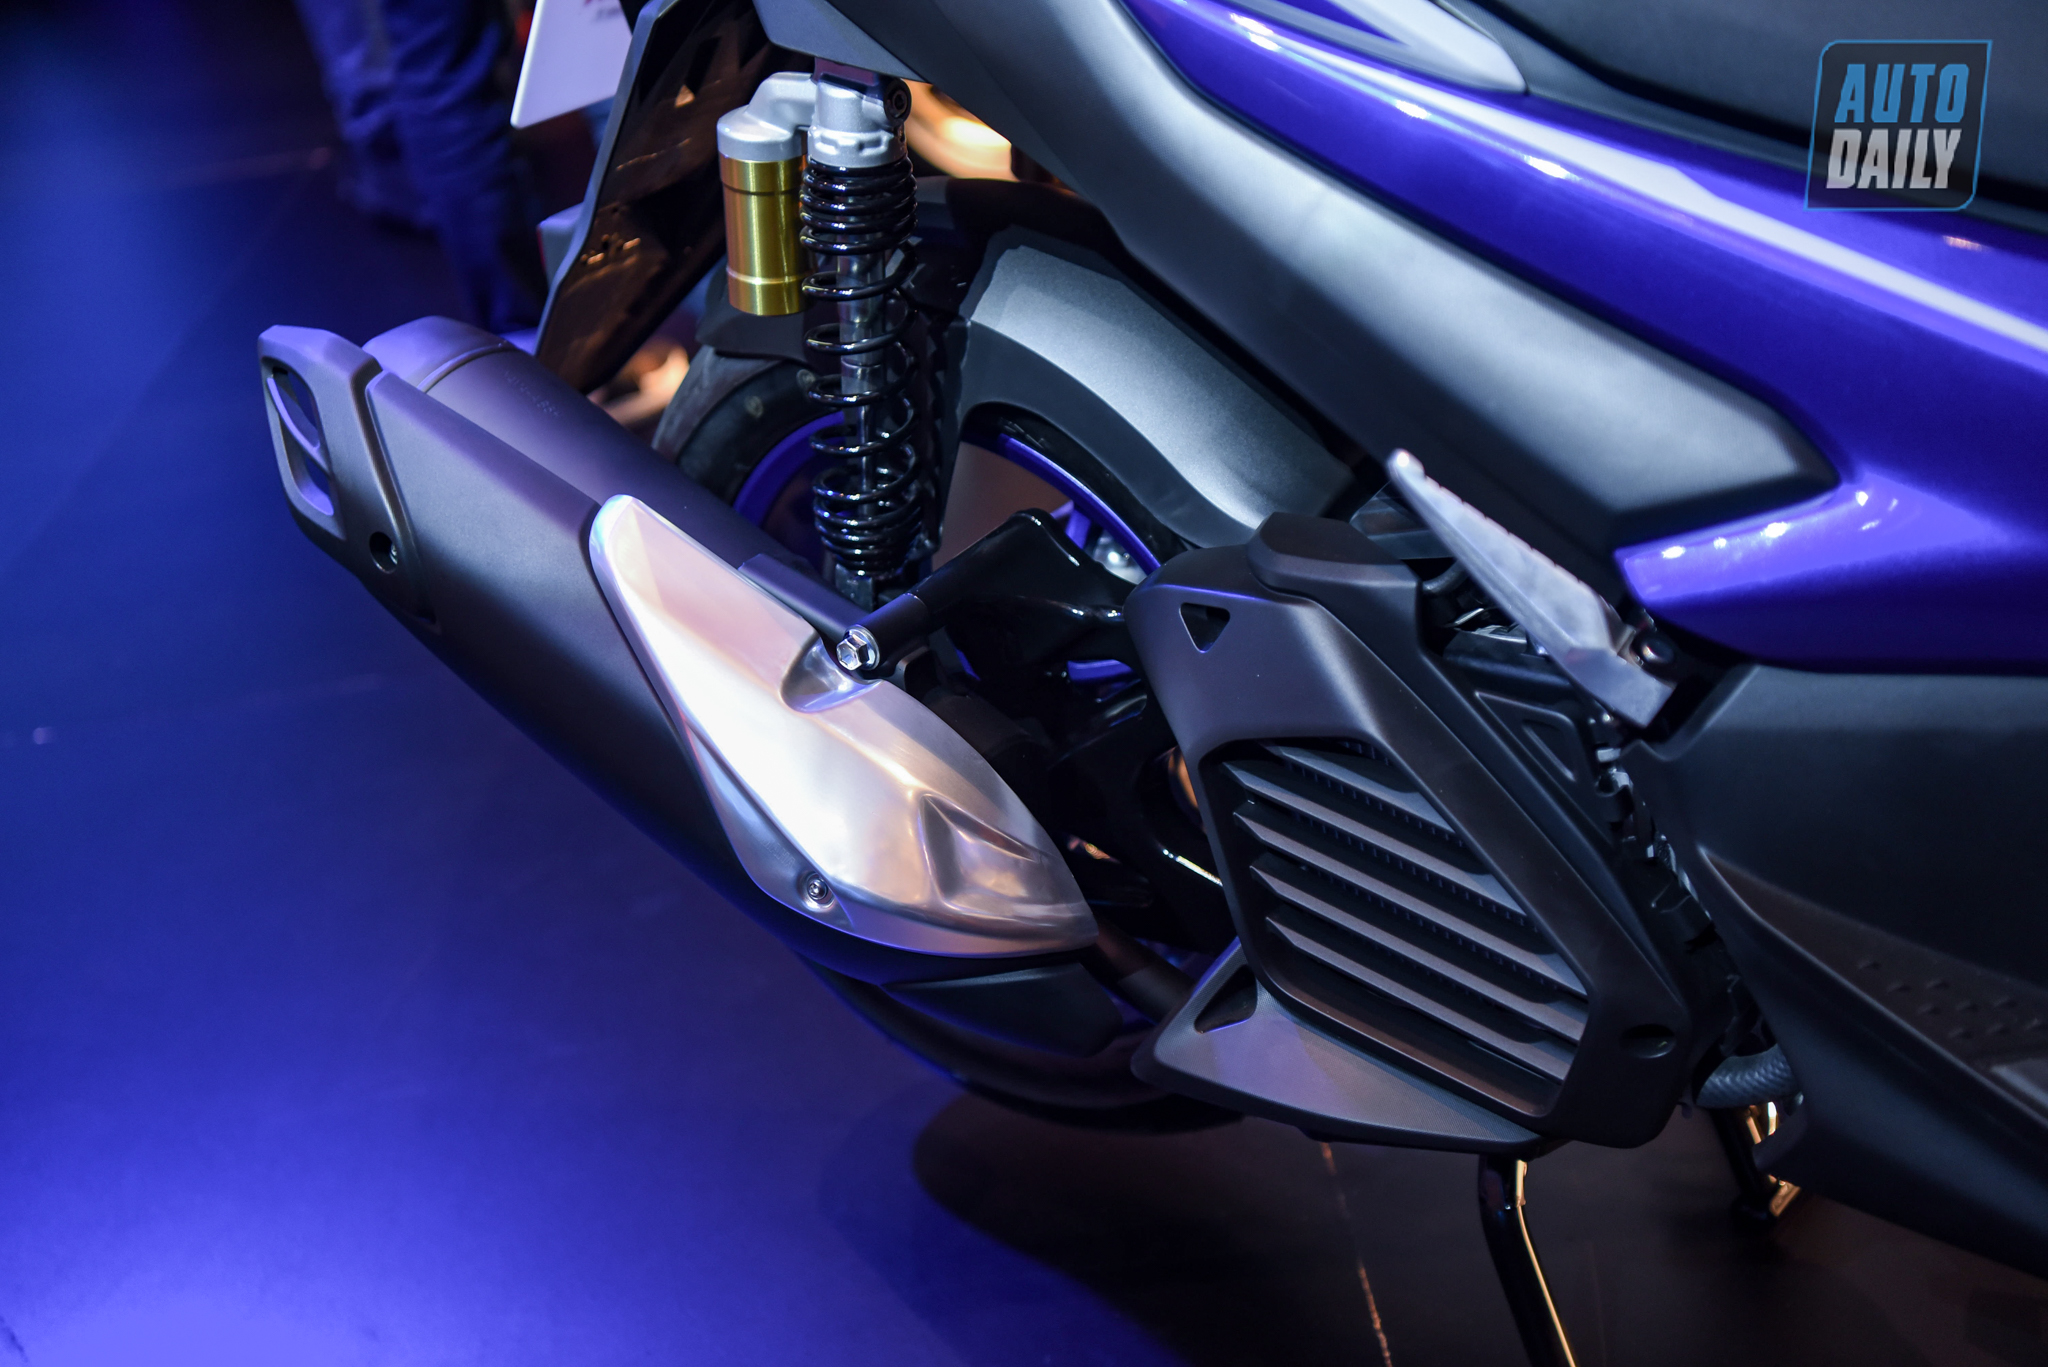 Chi tiết xe tay ga thể thao Yamaha NVX 155 2021 giá từ 53 triệu đồng yamaha-nvx-26.jpg